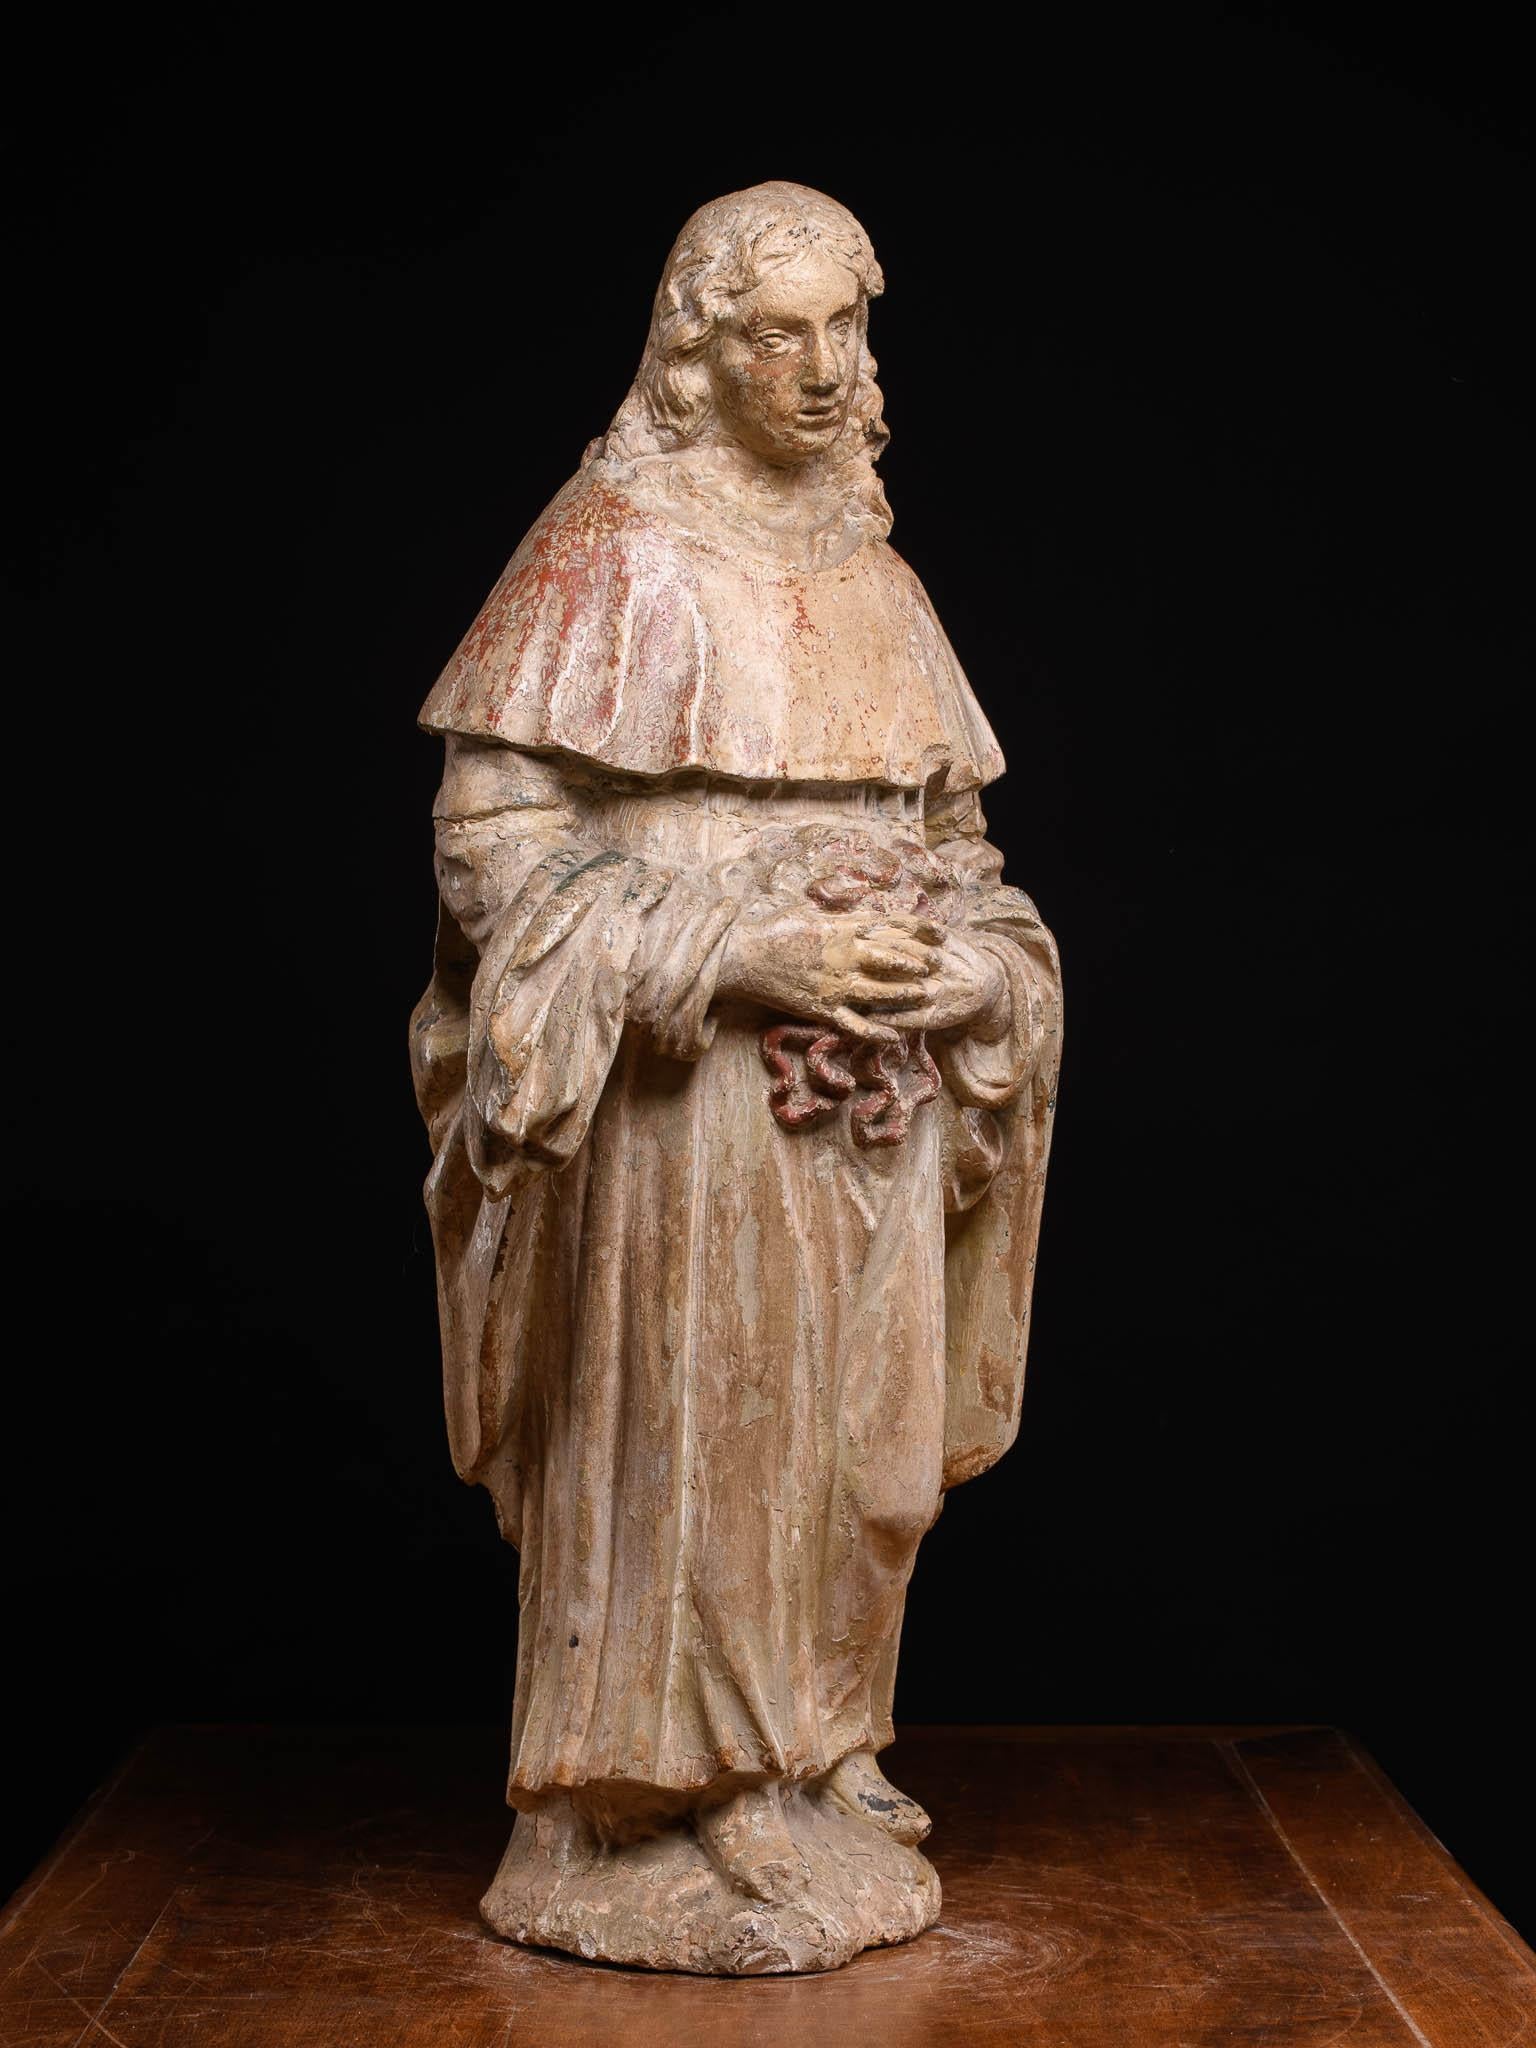 Der Heilige Erasmus oder Heilige Elmo (Antiochia, ca. 240 - Formia, 303) war ein italienischer Bischof und Schutzpatron der Seeleute. Sein Attribut war das Spill, eine Winde, auf der die Ankerketten aufgerollt wurden. Er starb als Märtyrer für